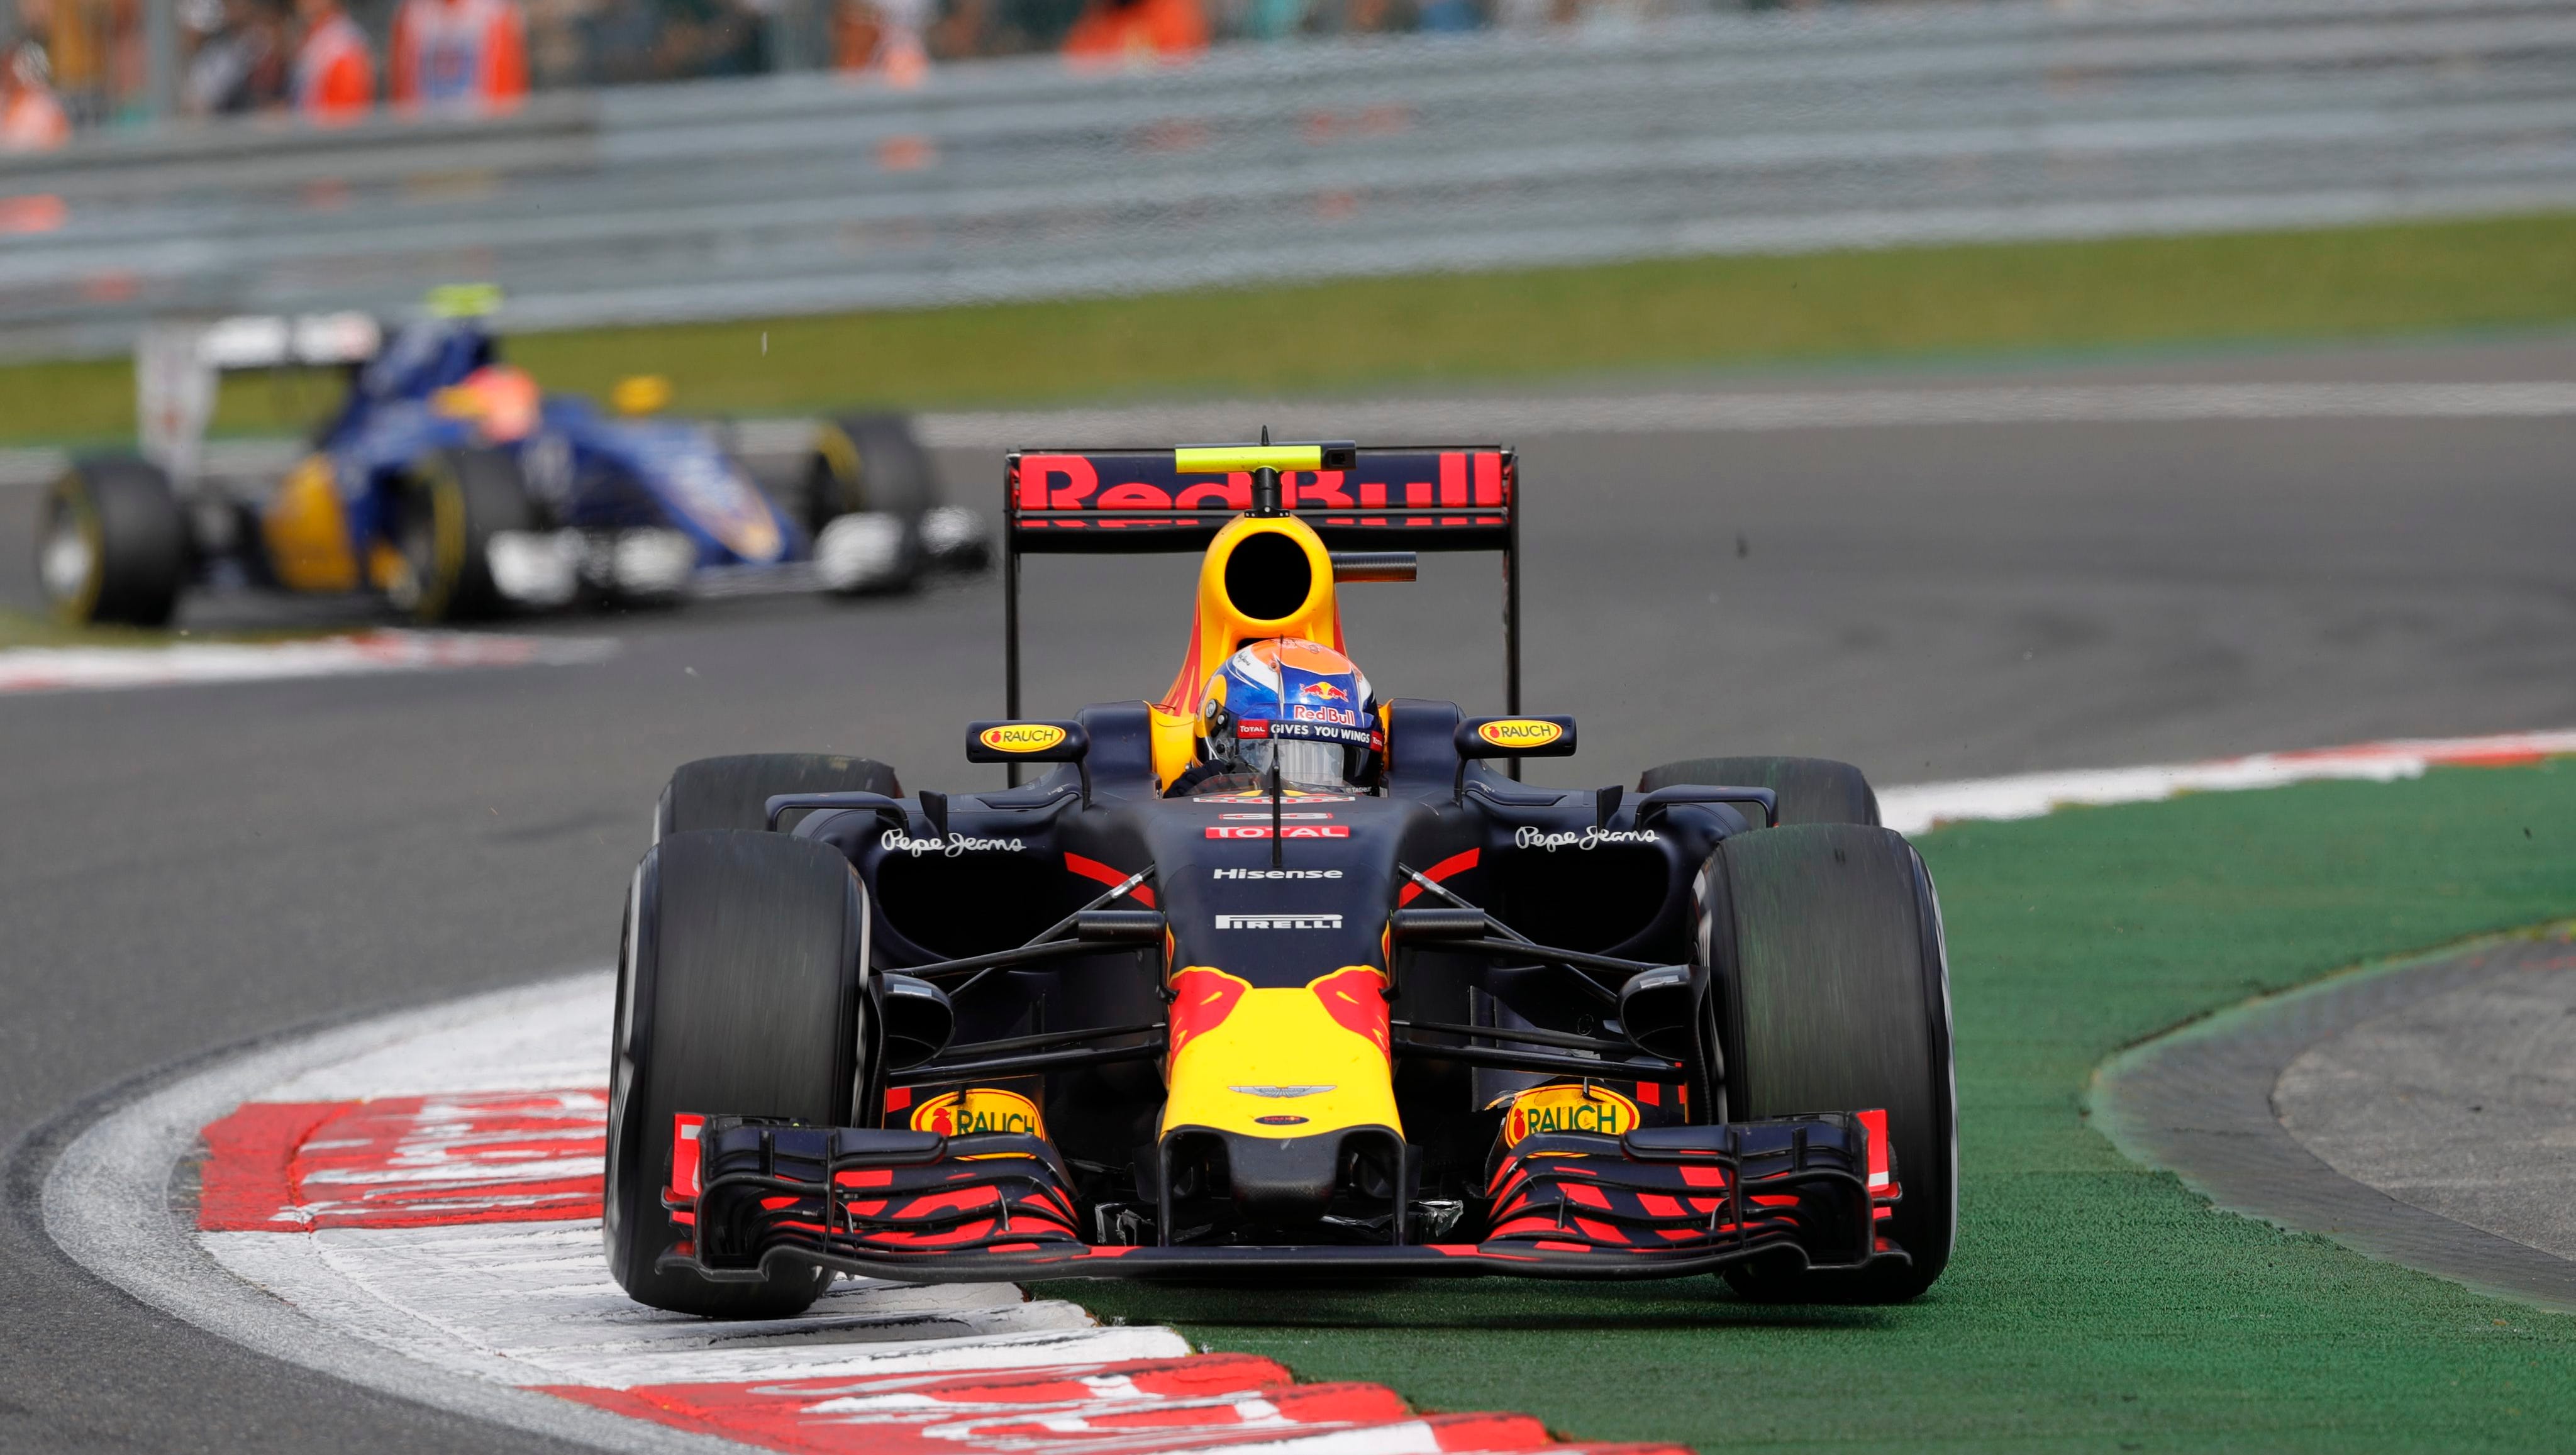 kwaadheid de vrije loop geven De lucht vieren Italian Grand Prix: Max Verstappen will be on hostile territory in Monza